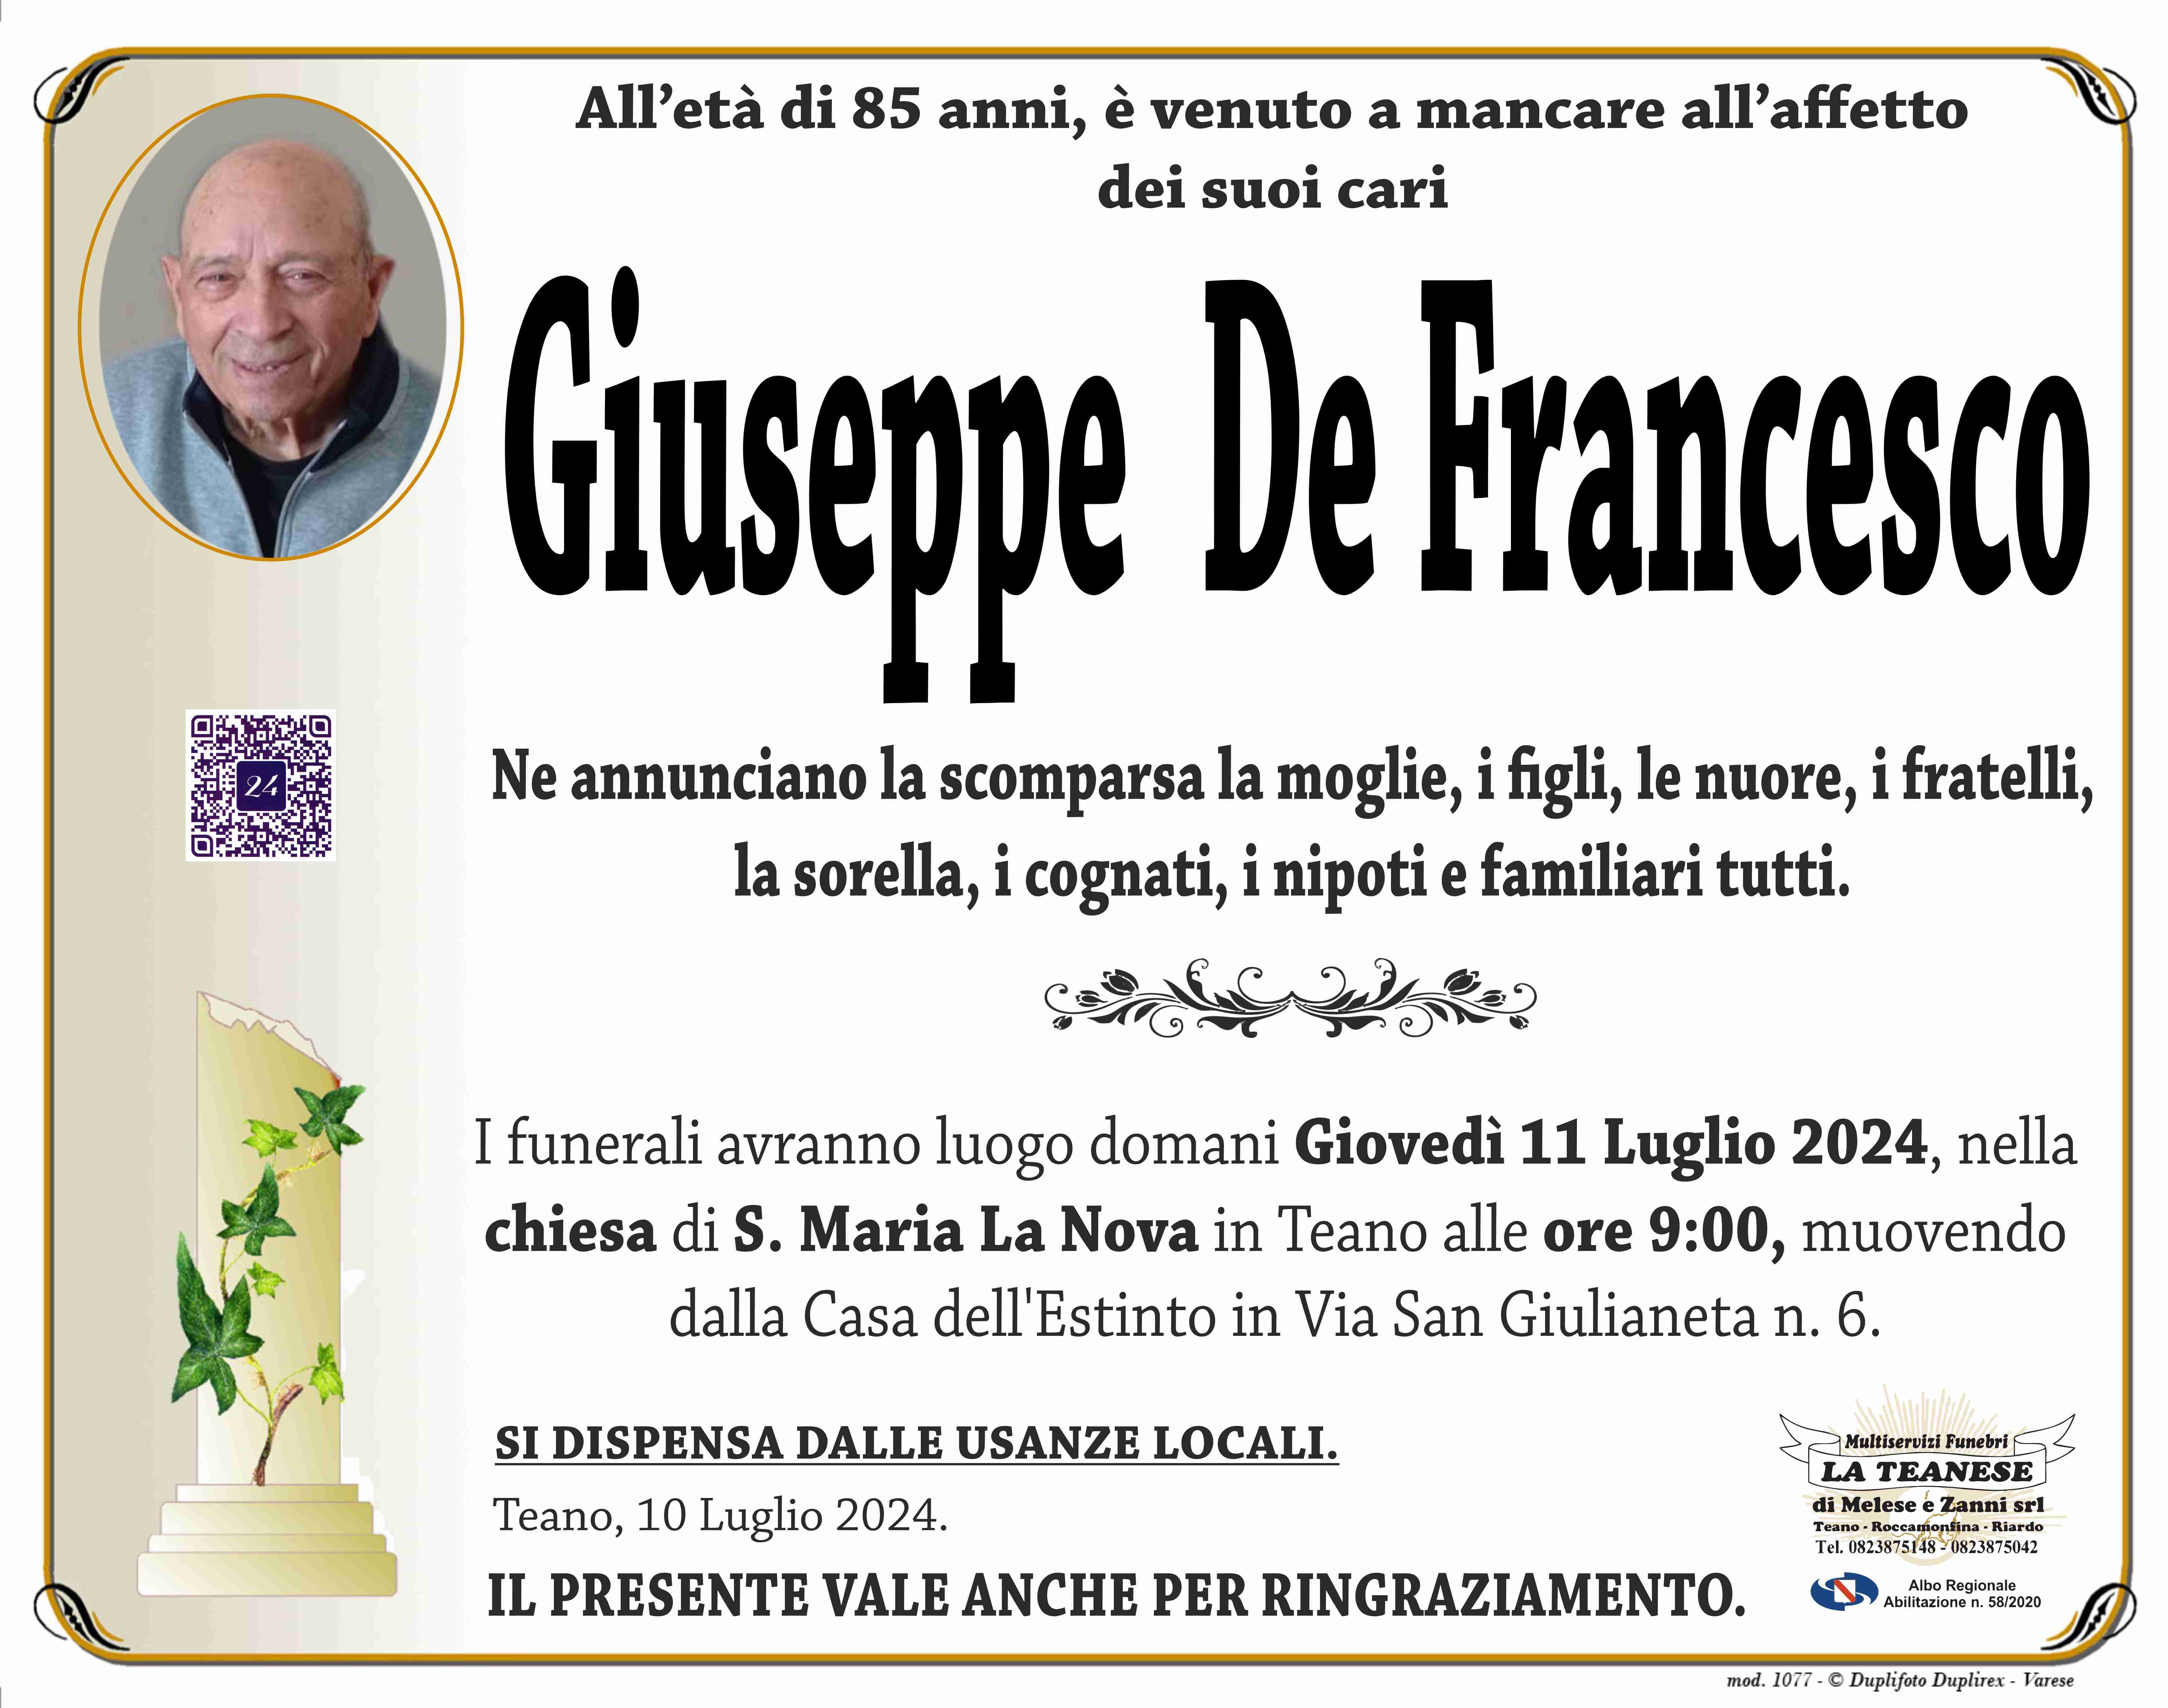 Giuseppe De Francesco